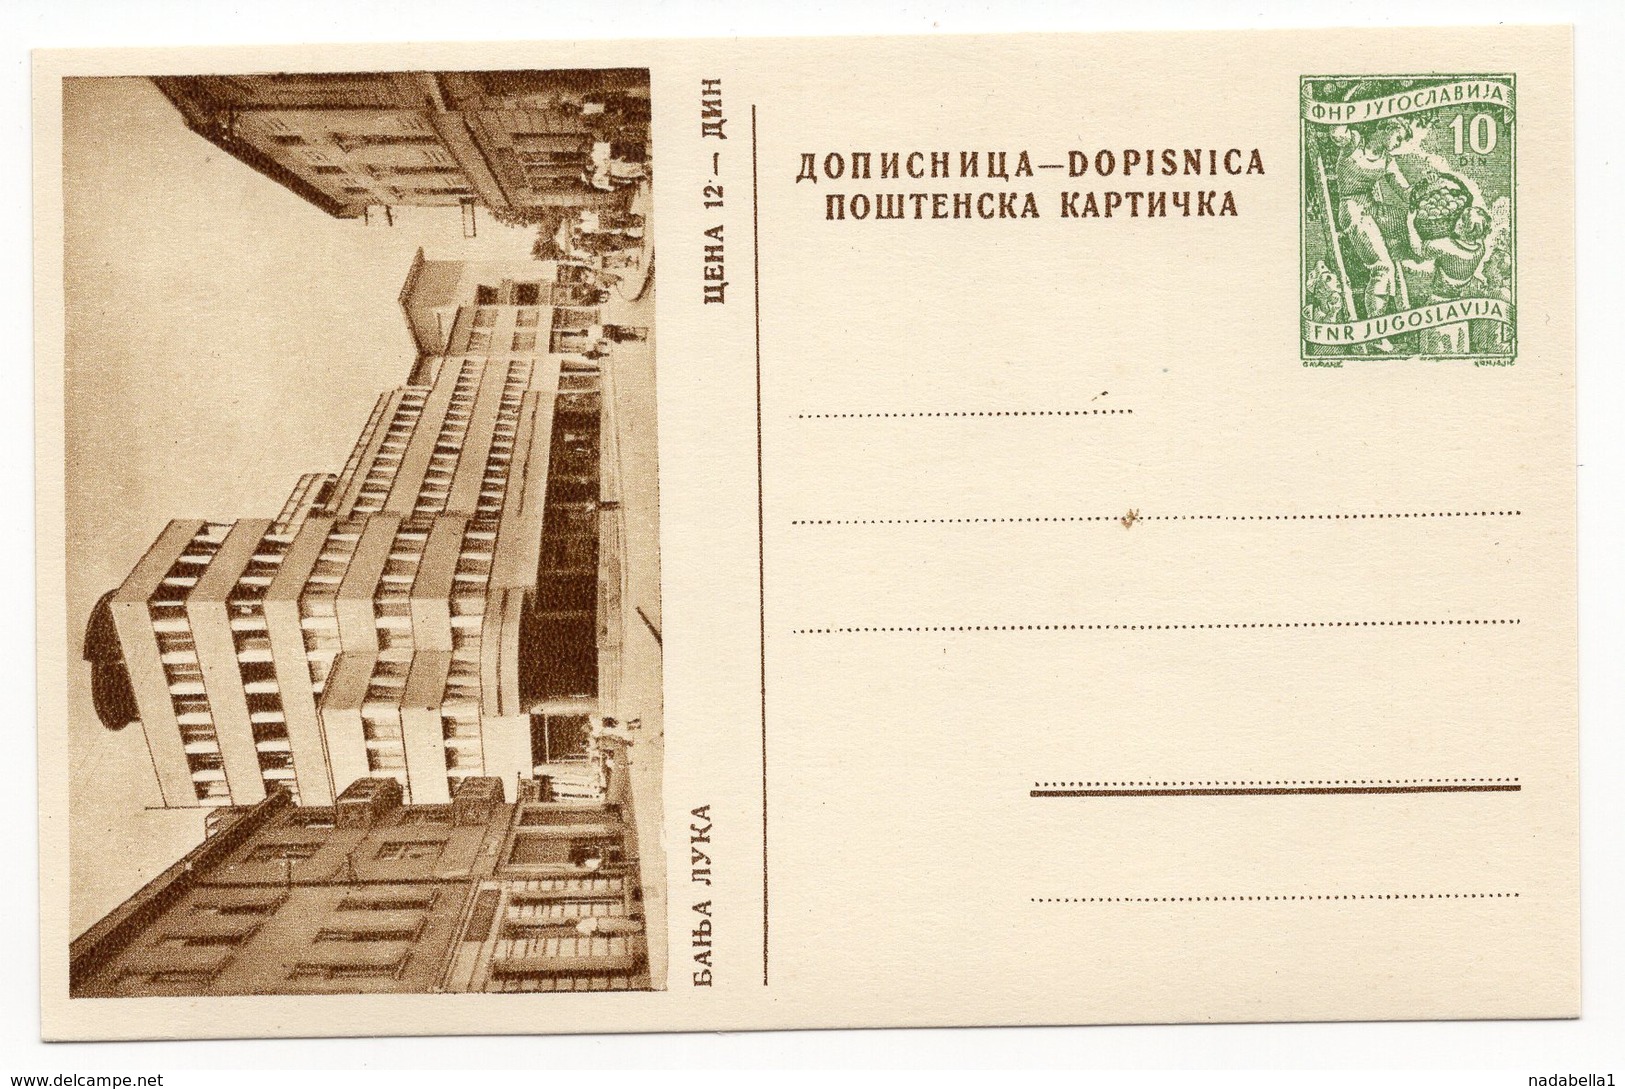 1956, YUGOSLAVIA, BANJA LUKA, BOSNIA, 10 DINARA GREEN, ILLUSTRATED STATIONERY CARD, MINT - Postal Stationery